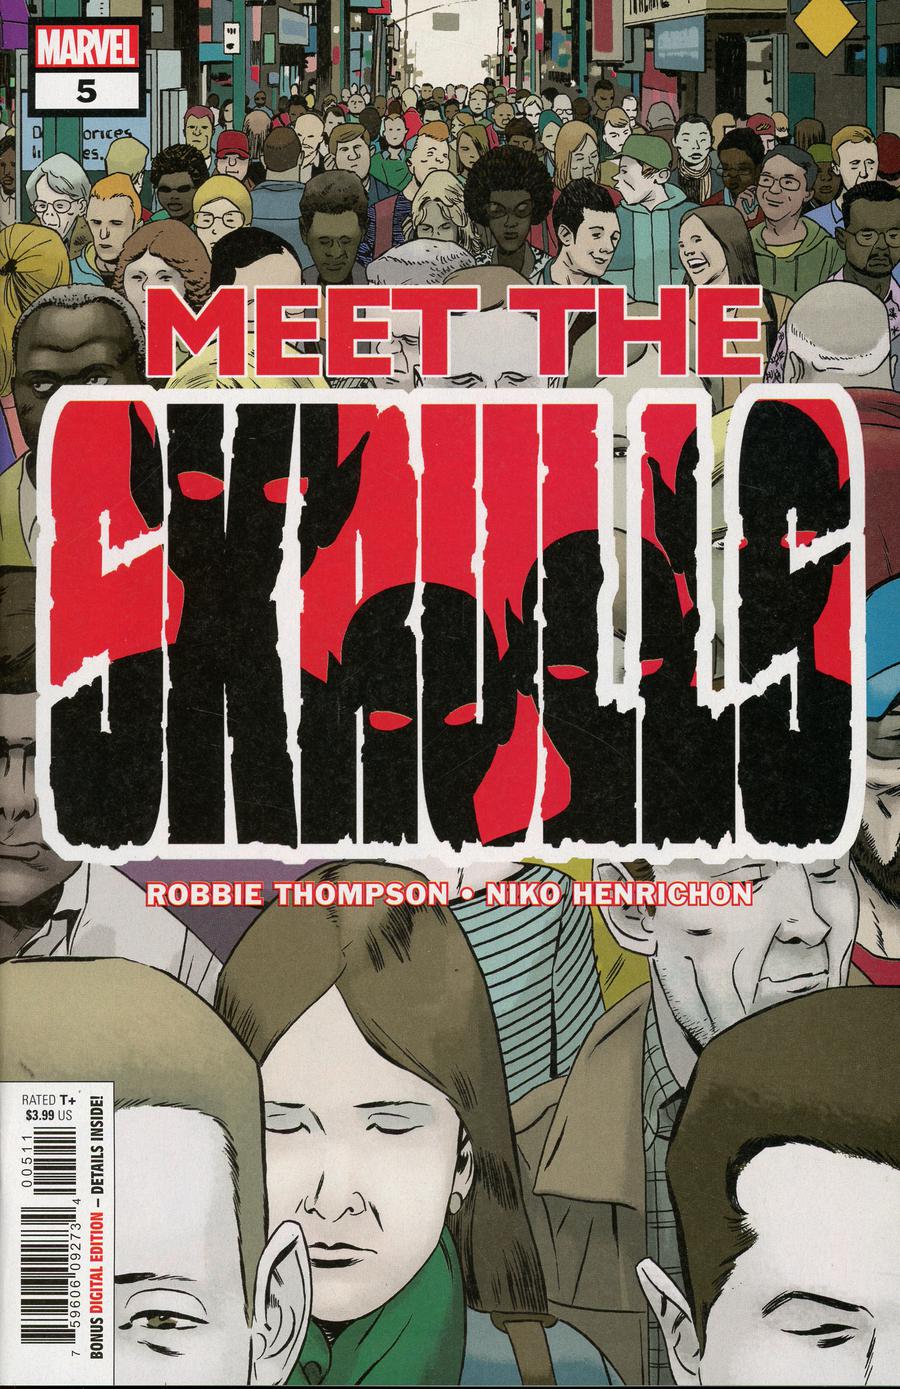 Meet The Skrulls #5